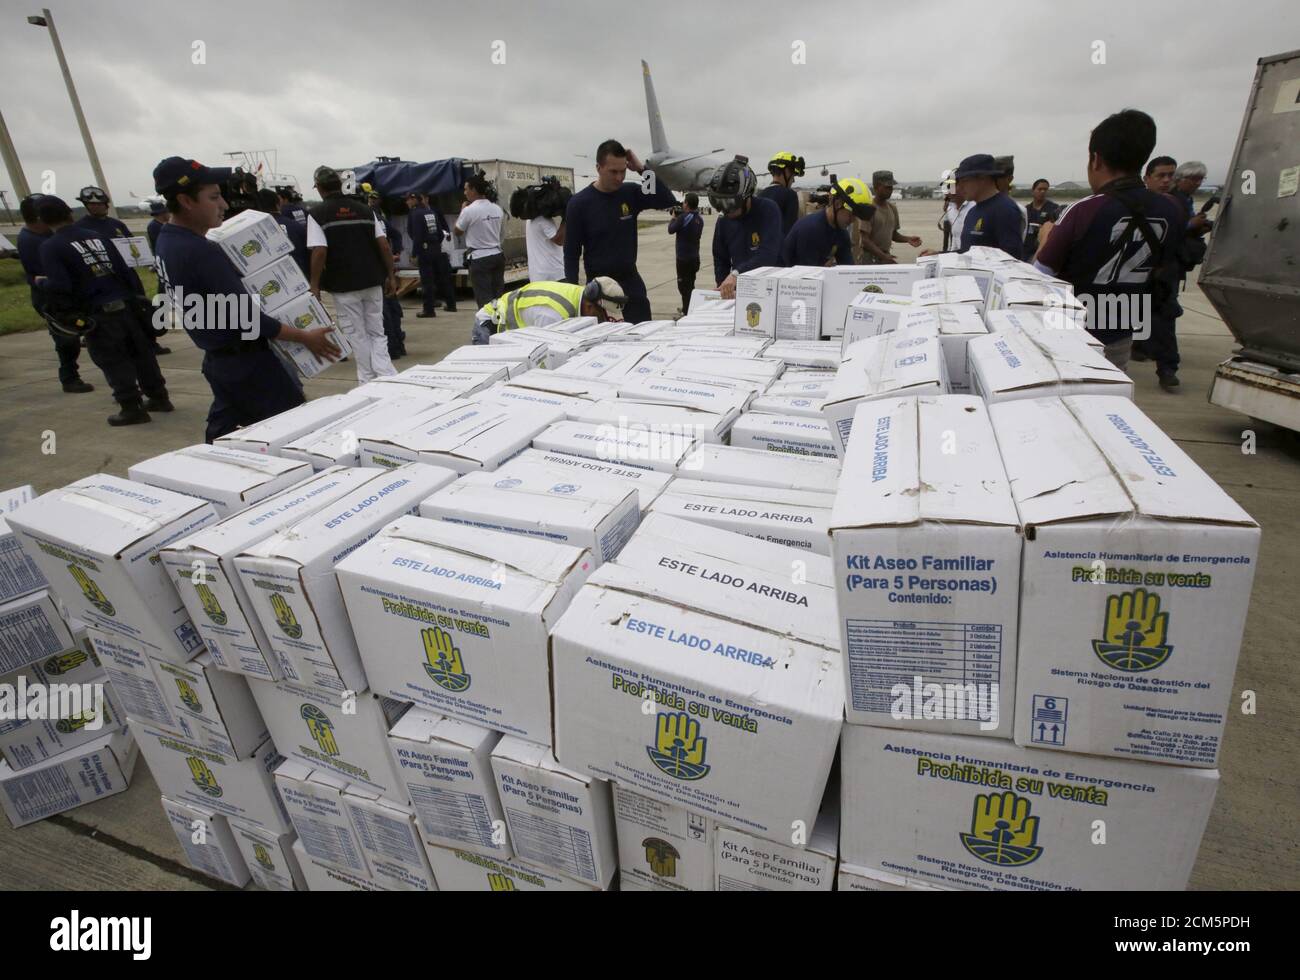 Las cajas de ayuda humanitaria de Colombia se clasifican al llegar al  aeropuerto de Eloy Alfaro en Manta, después de un terremoto en la costa  pacífica de Ecuador, el 24 de abril